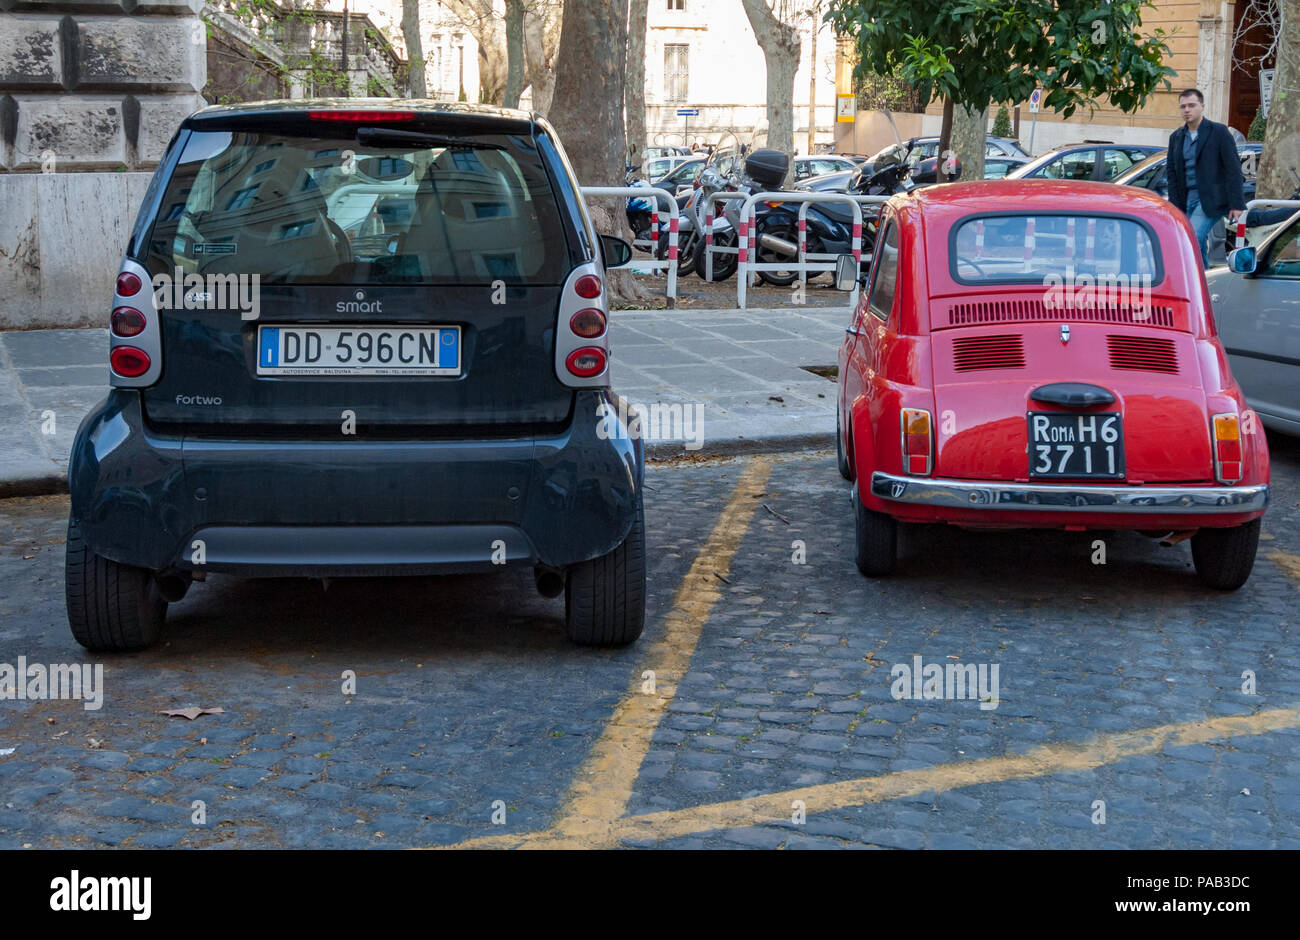 Wie unser Konzept der kleine hat über 40 Jahren geändert. Ein original Fiat Cinquecento neben einem Smart fortwo Car in einem Rom Seitenstraße. Stockfoto